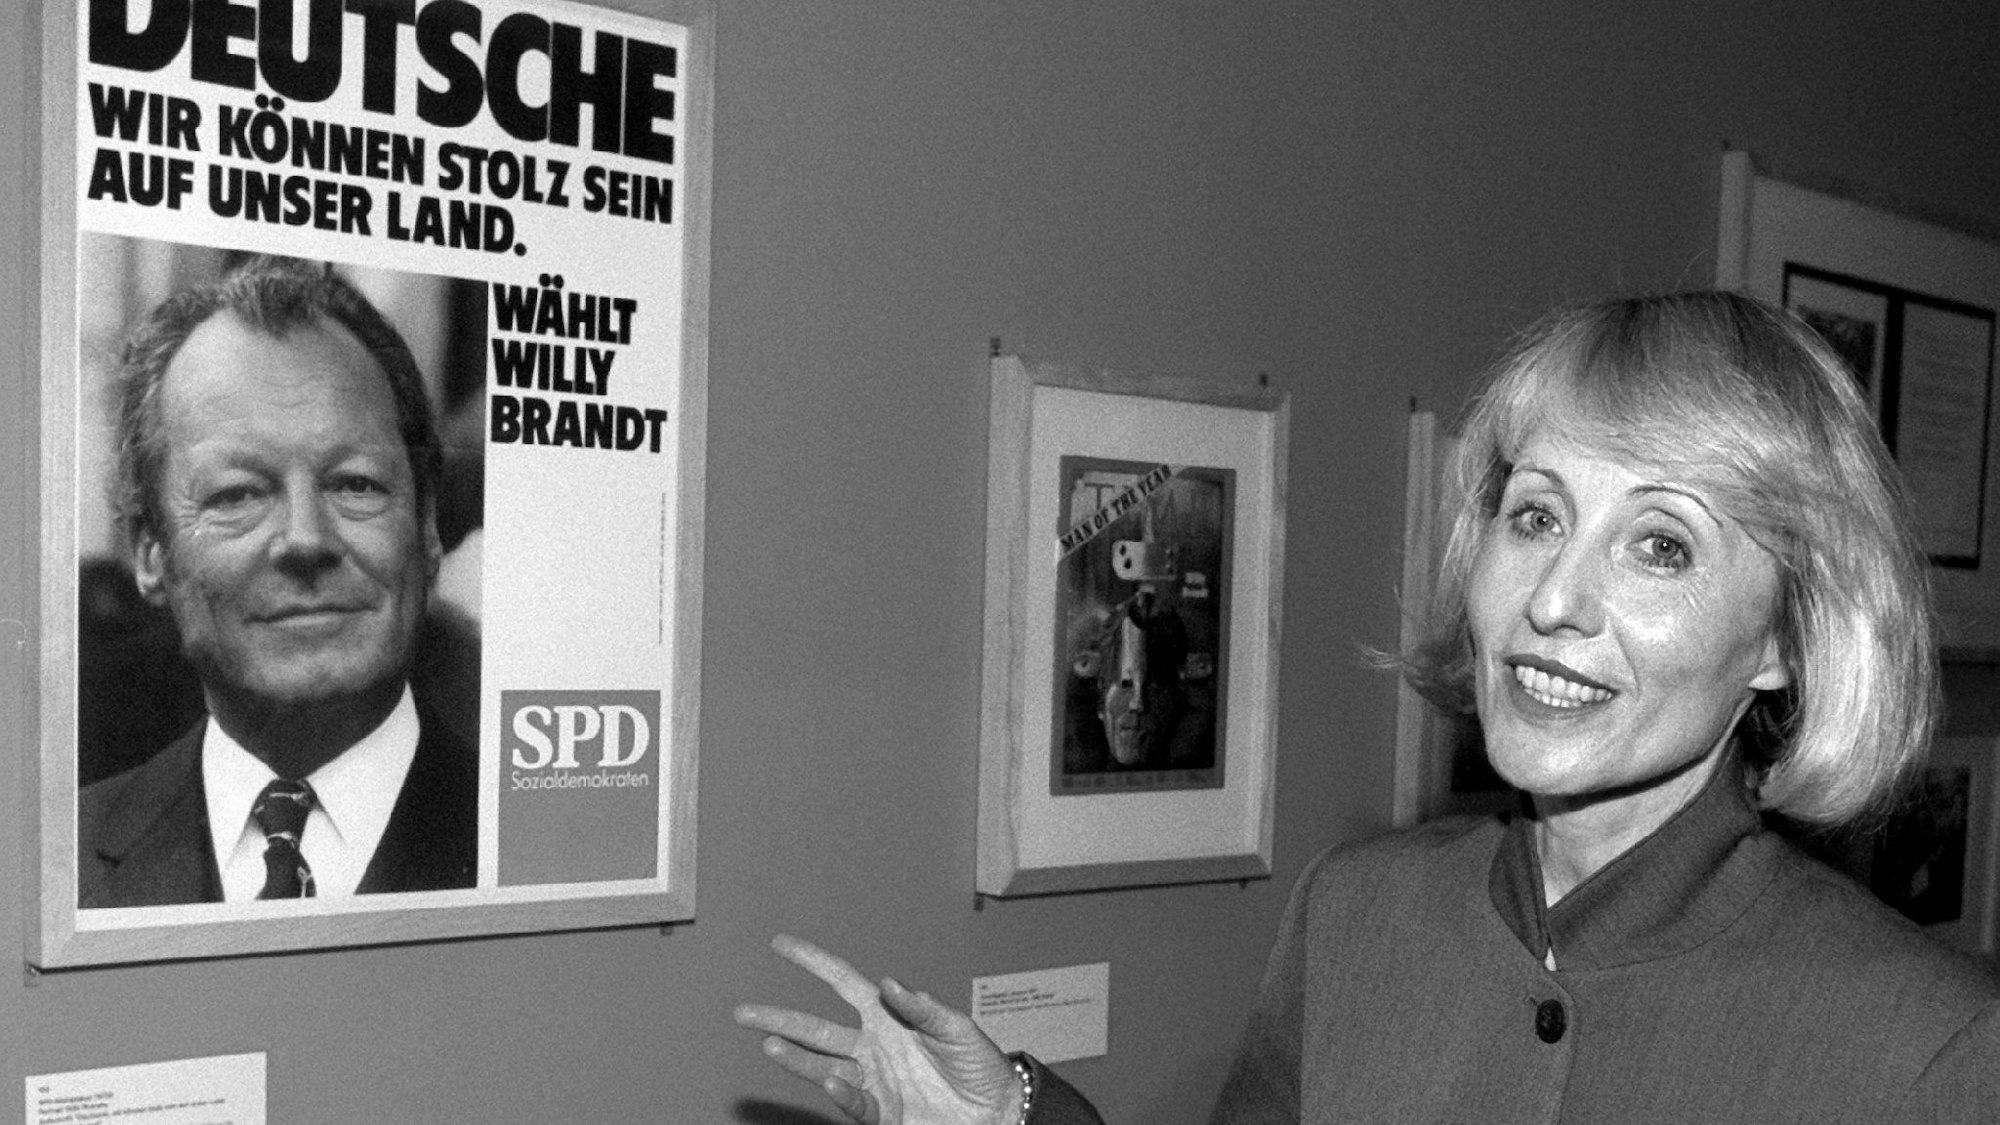 Brigitte Seebacher-Brandt, die Witwe des früheren Bundeskanzlers und Nobelpreisträgers Willy Brandt, zeigt am Freitag (6.12.96) in Berlin auf ein SPD-Plakat zu den vorgezogenen Bundestagswahlen von 1972. Das Poster gehört in die Ausstellung "Um die Freiheit kämpfen - Willy Brandt 1913-1992", die am Sonntag (8.12.96) im Rathaus Schöneberg eröffnet wird.